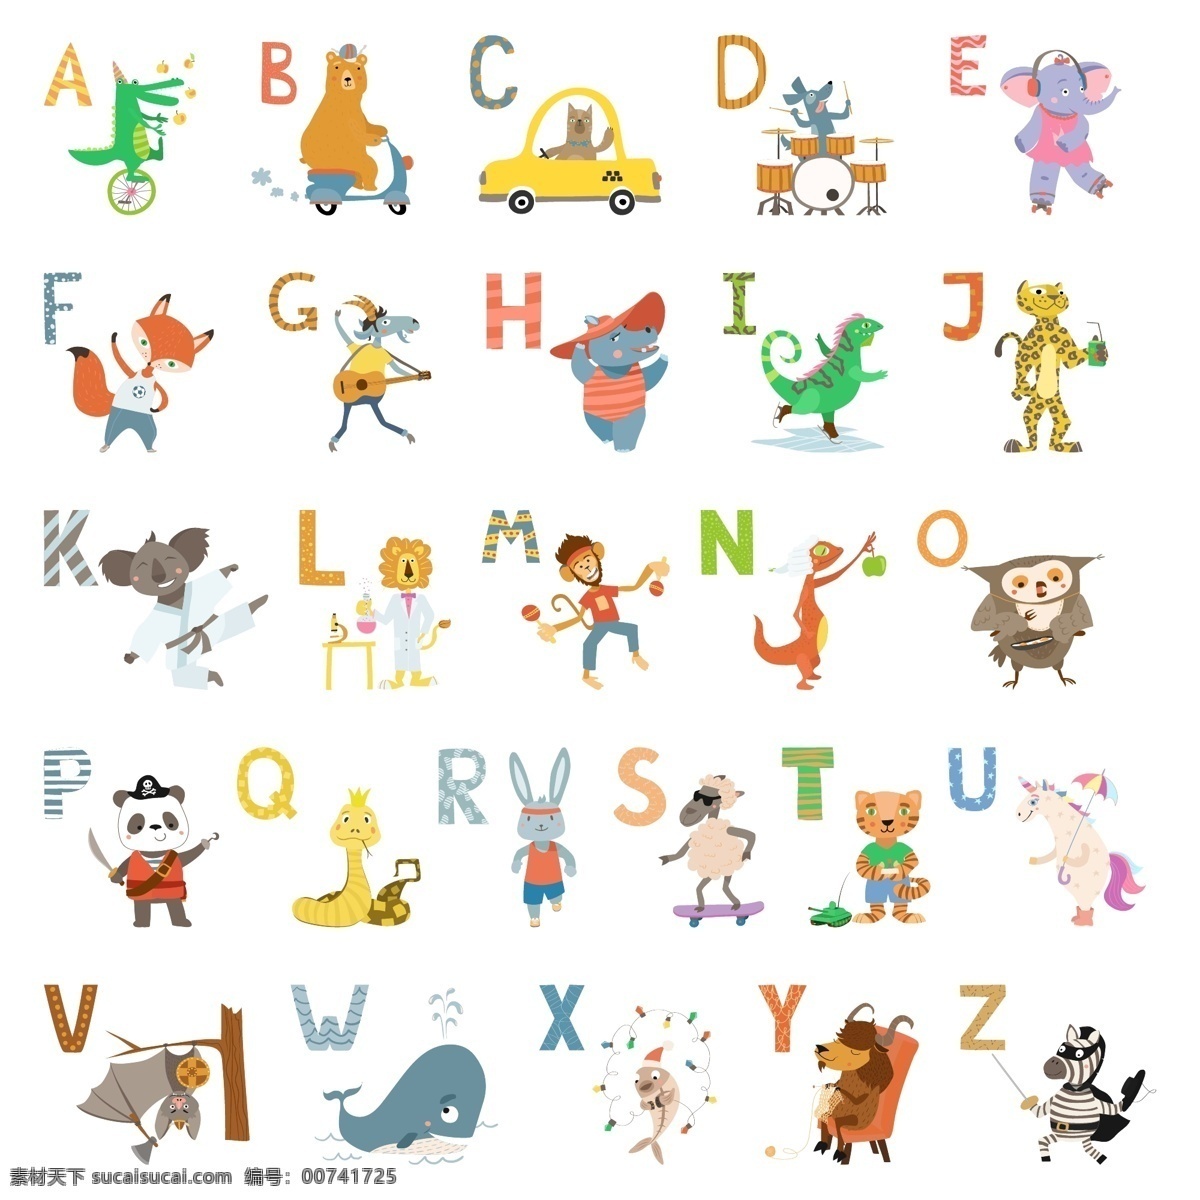 卡通 英文 字母表 英文识字 学英语 26个字母 幼儿英语识字 卡通字母表 英语字母 英文字母表 标志图标 其他图标